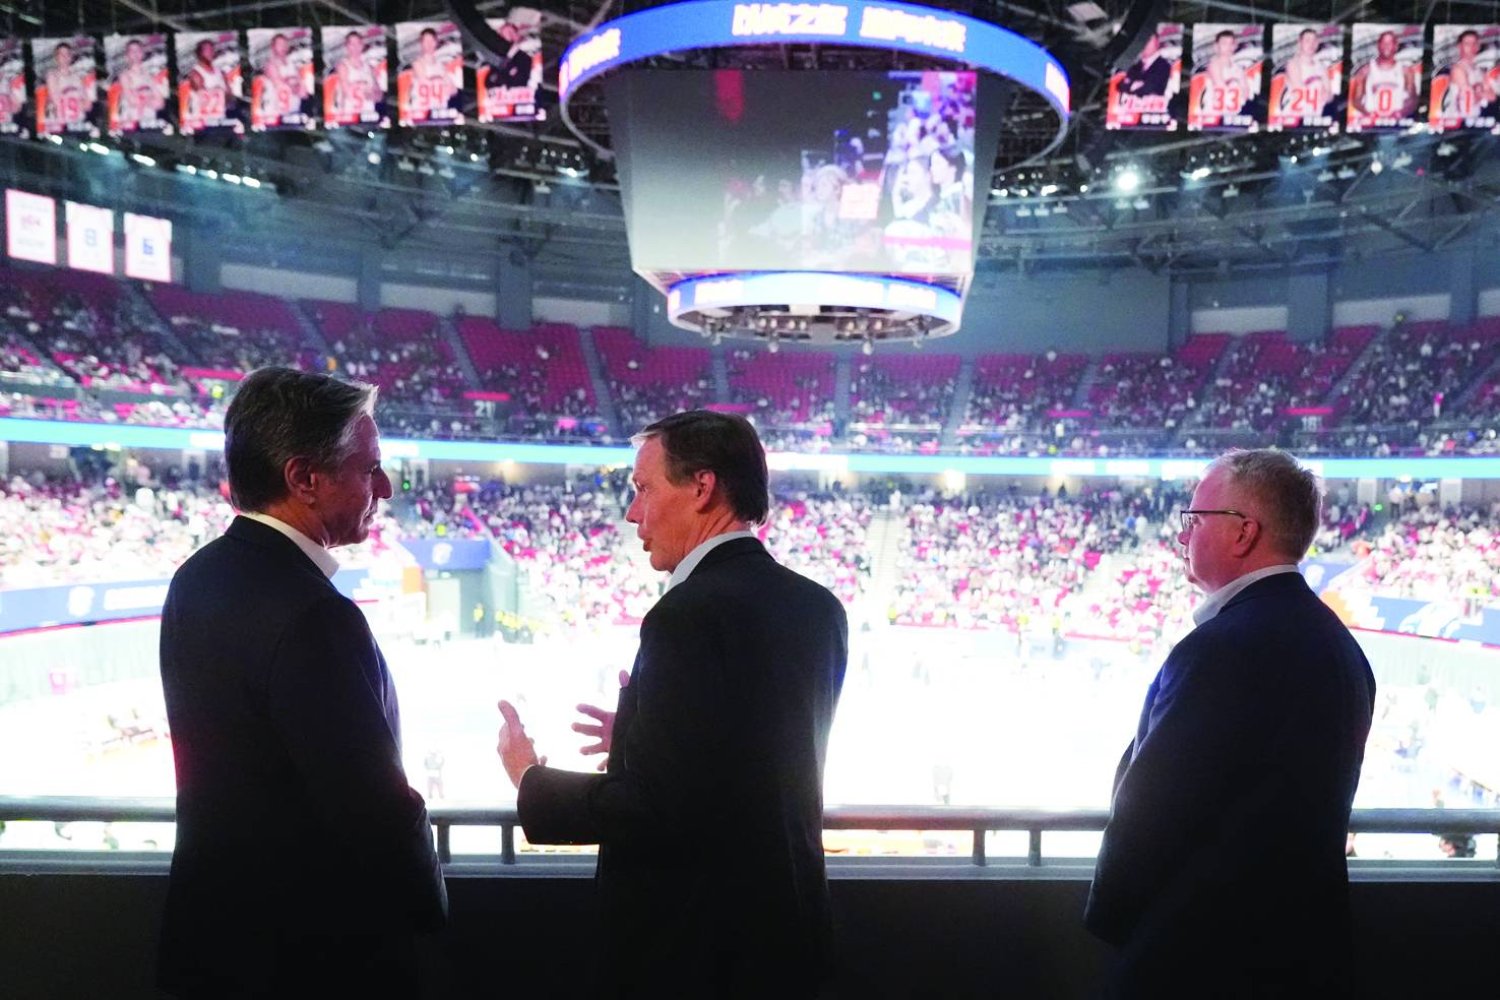 
وزير الخارجية الأميركي أنتوني بلينكن يتحدث مع السفير الأميركي لدى الصين نيكولاس بيرنز خلال مباراة كرة سلة في شنغهاي أمس (أ.ب)